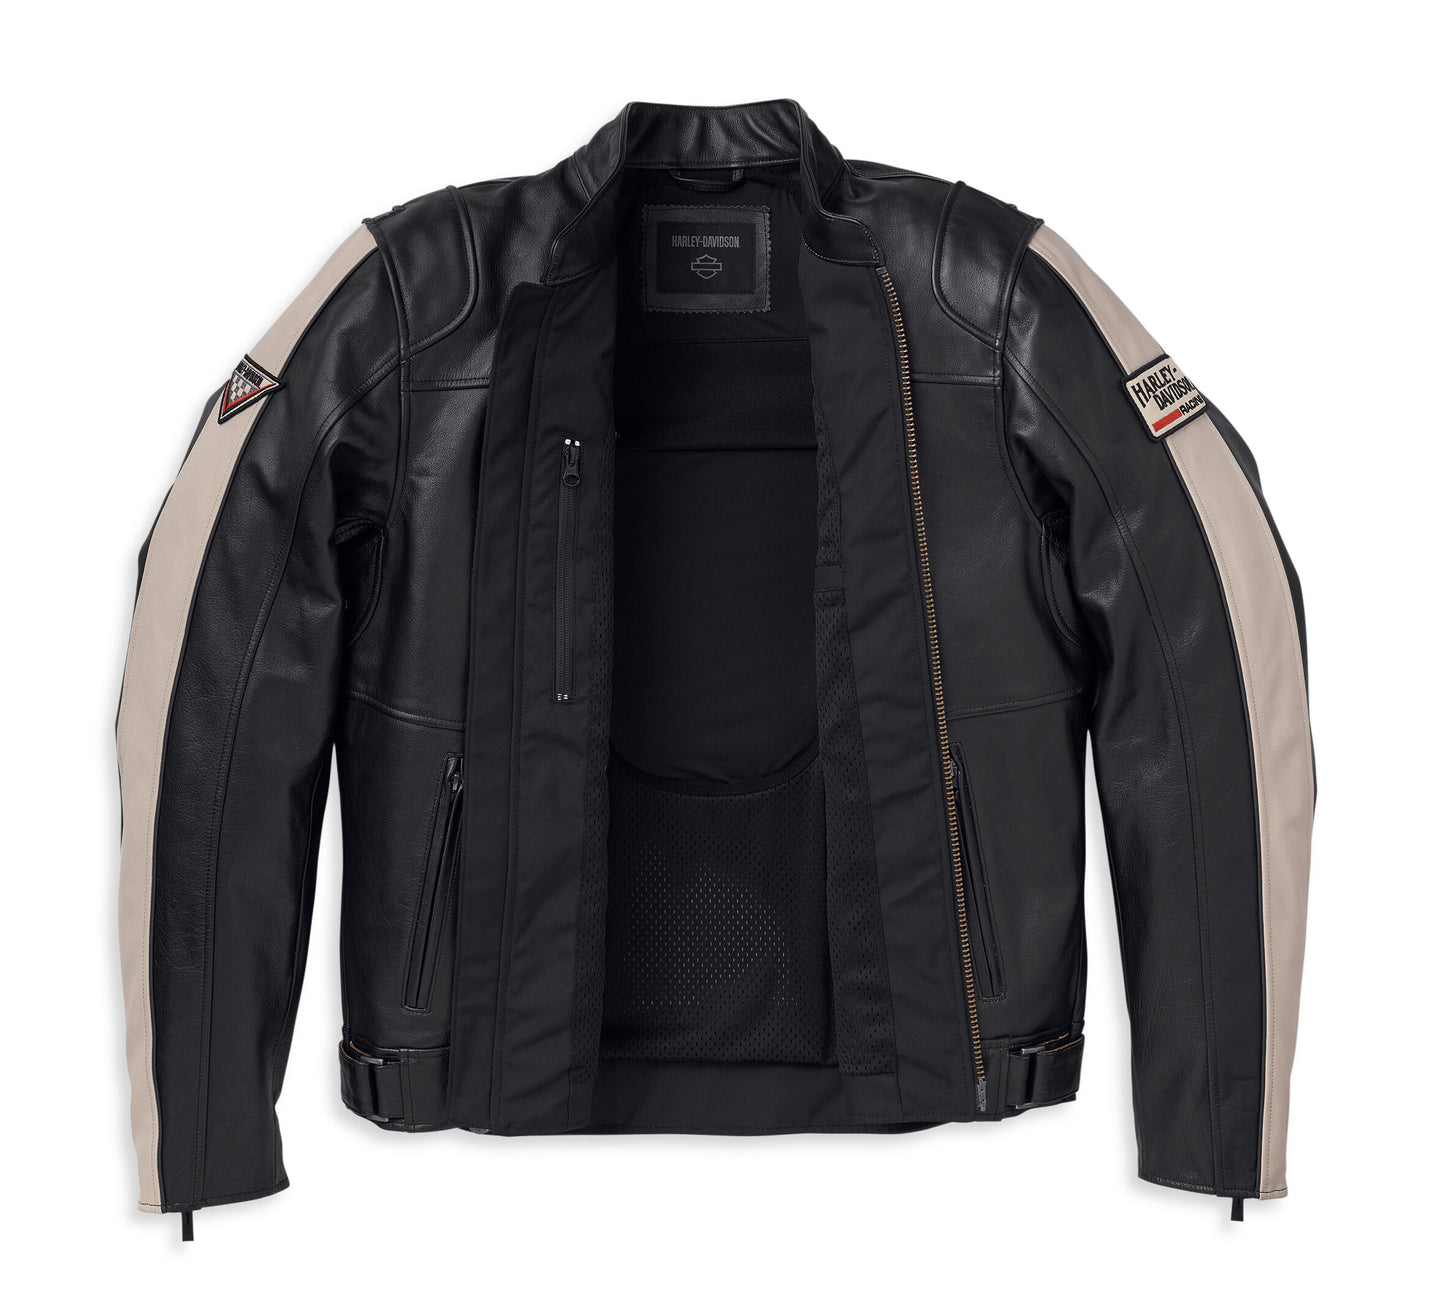 Enduro Leather Jacket